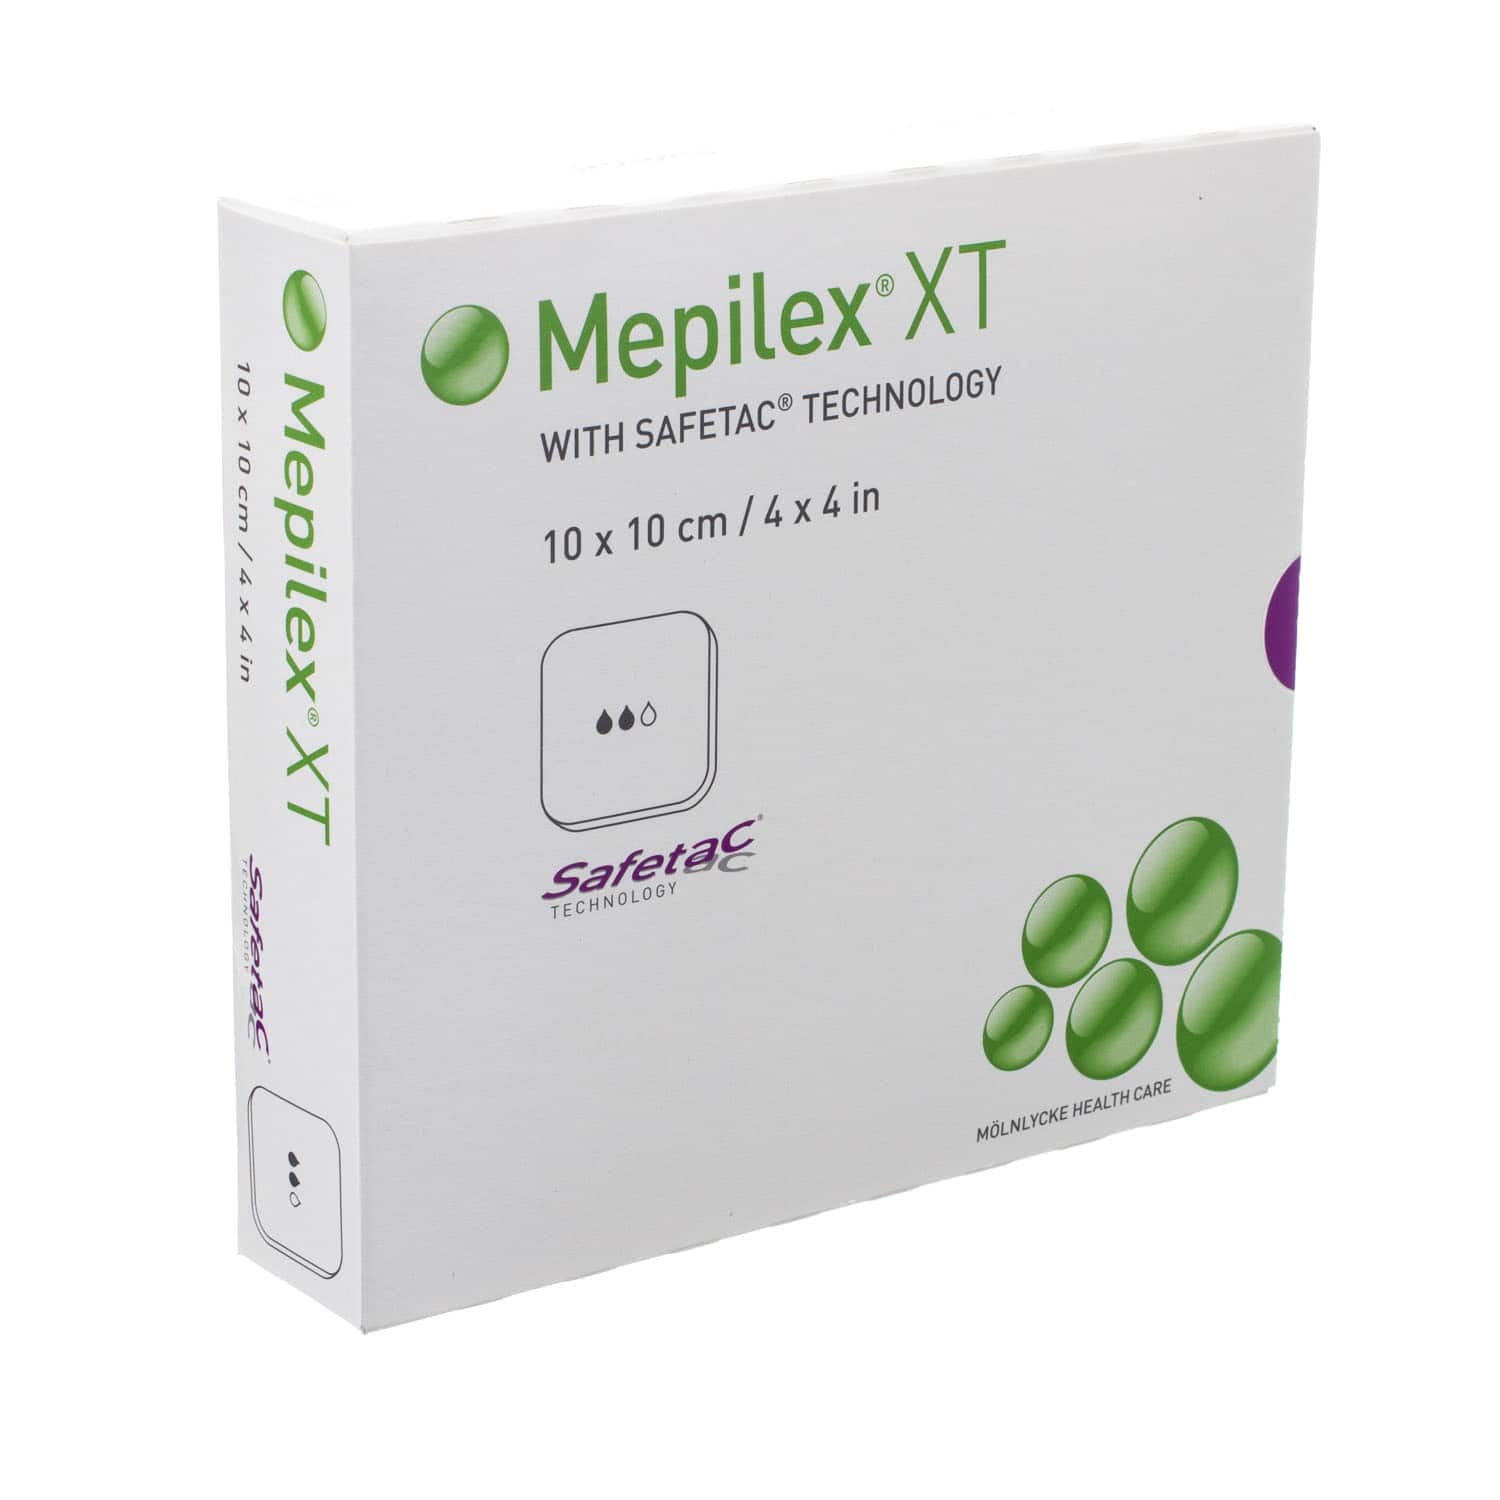 Mepilex XT 10 x 10 cm